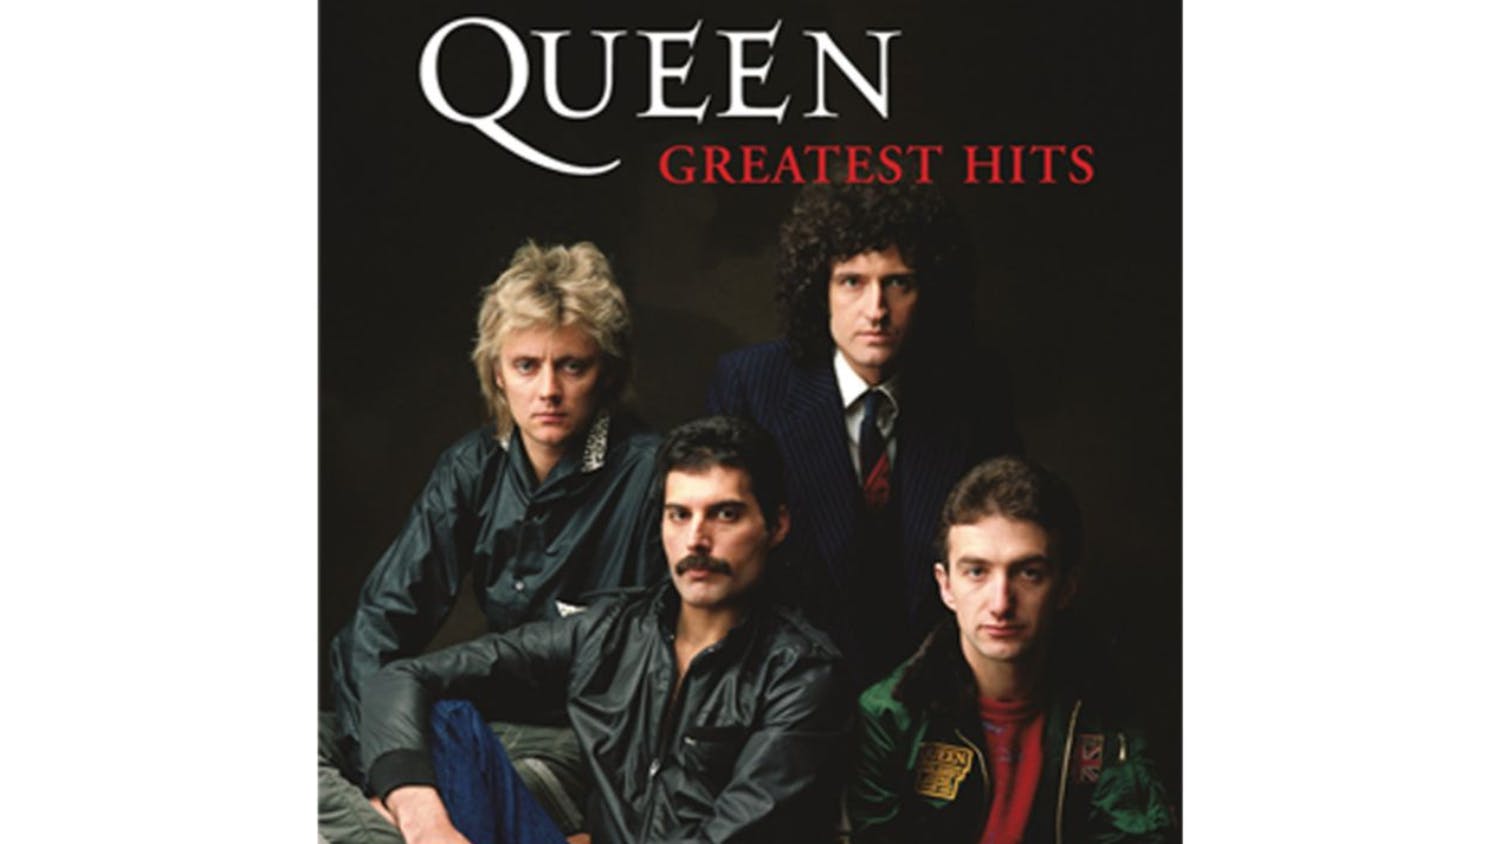 Queen - Greatest Hits Framed CD + Album Art